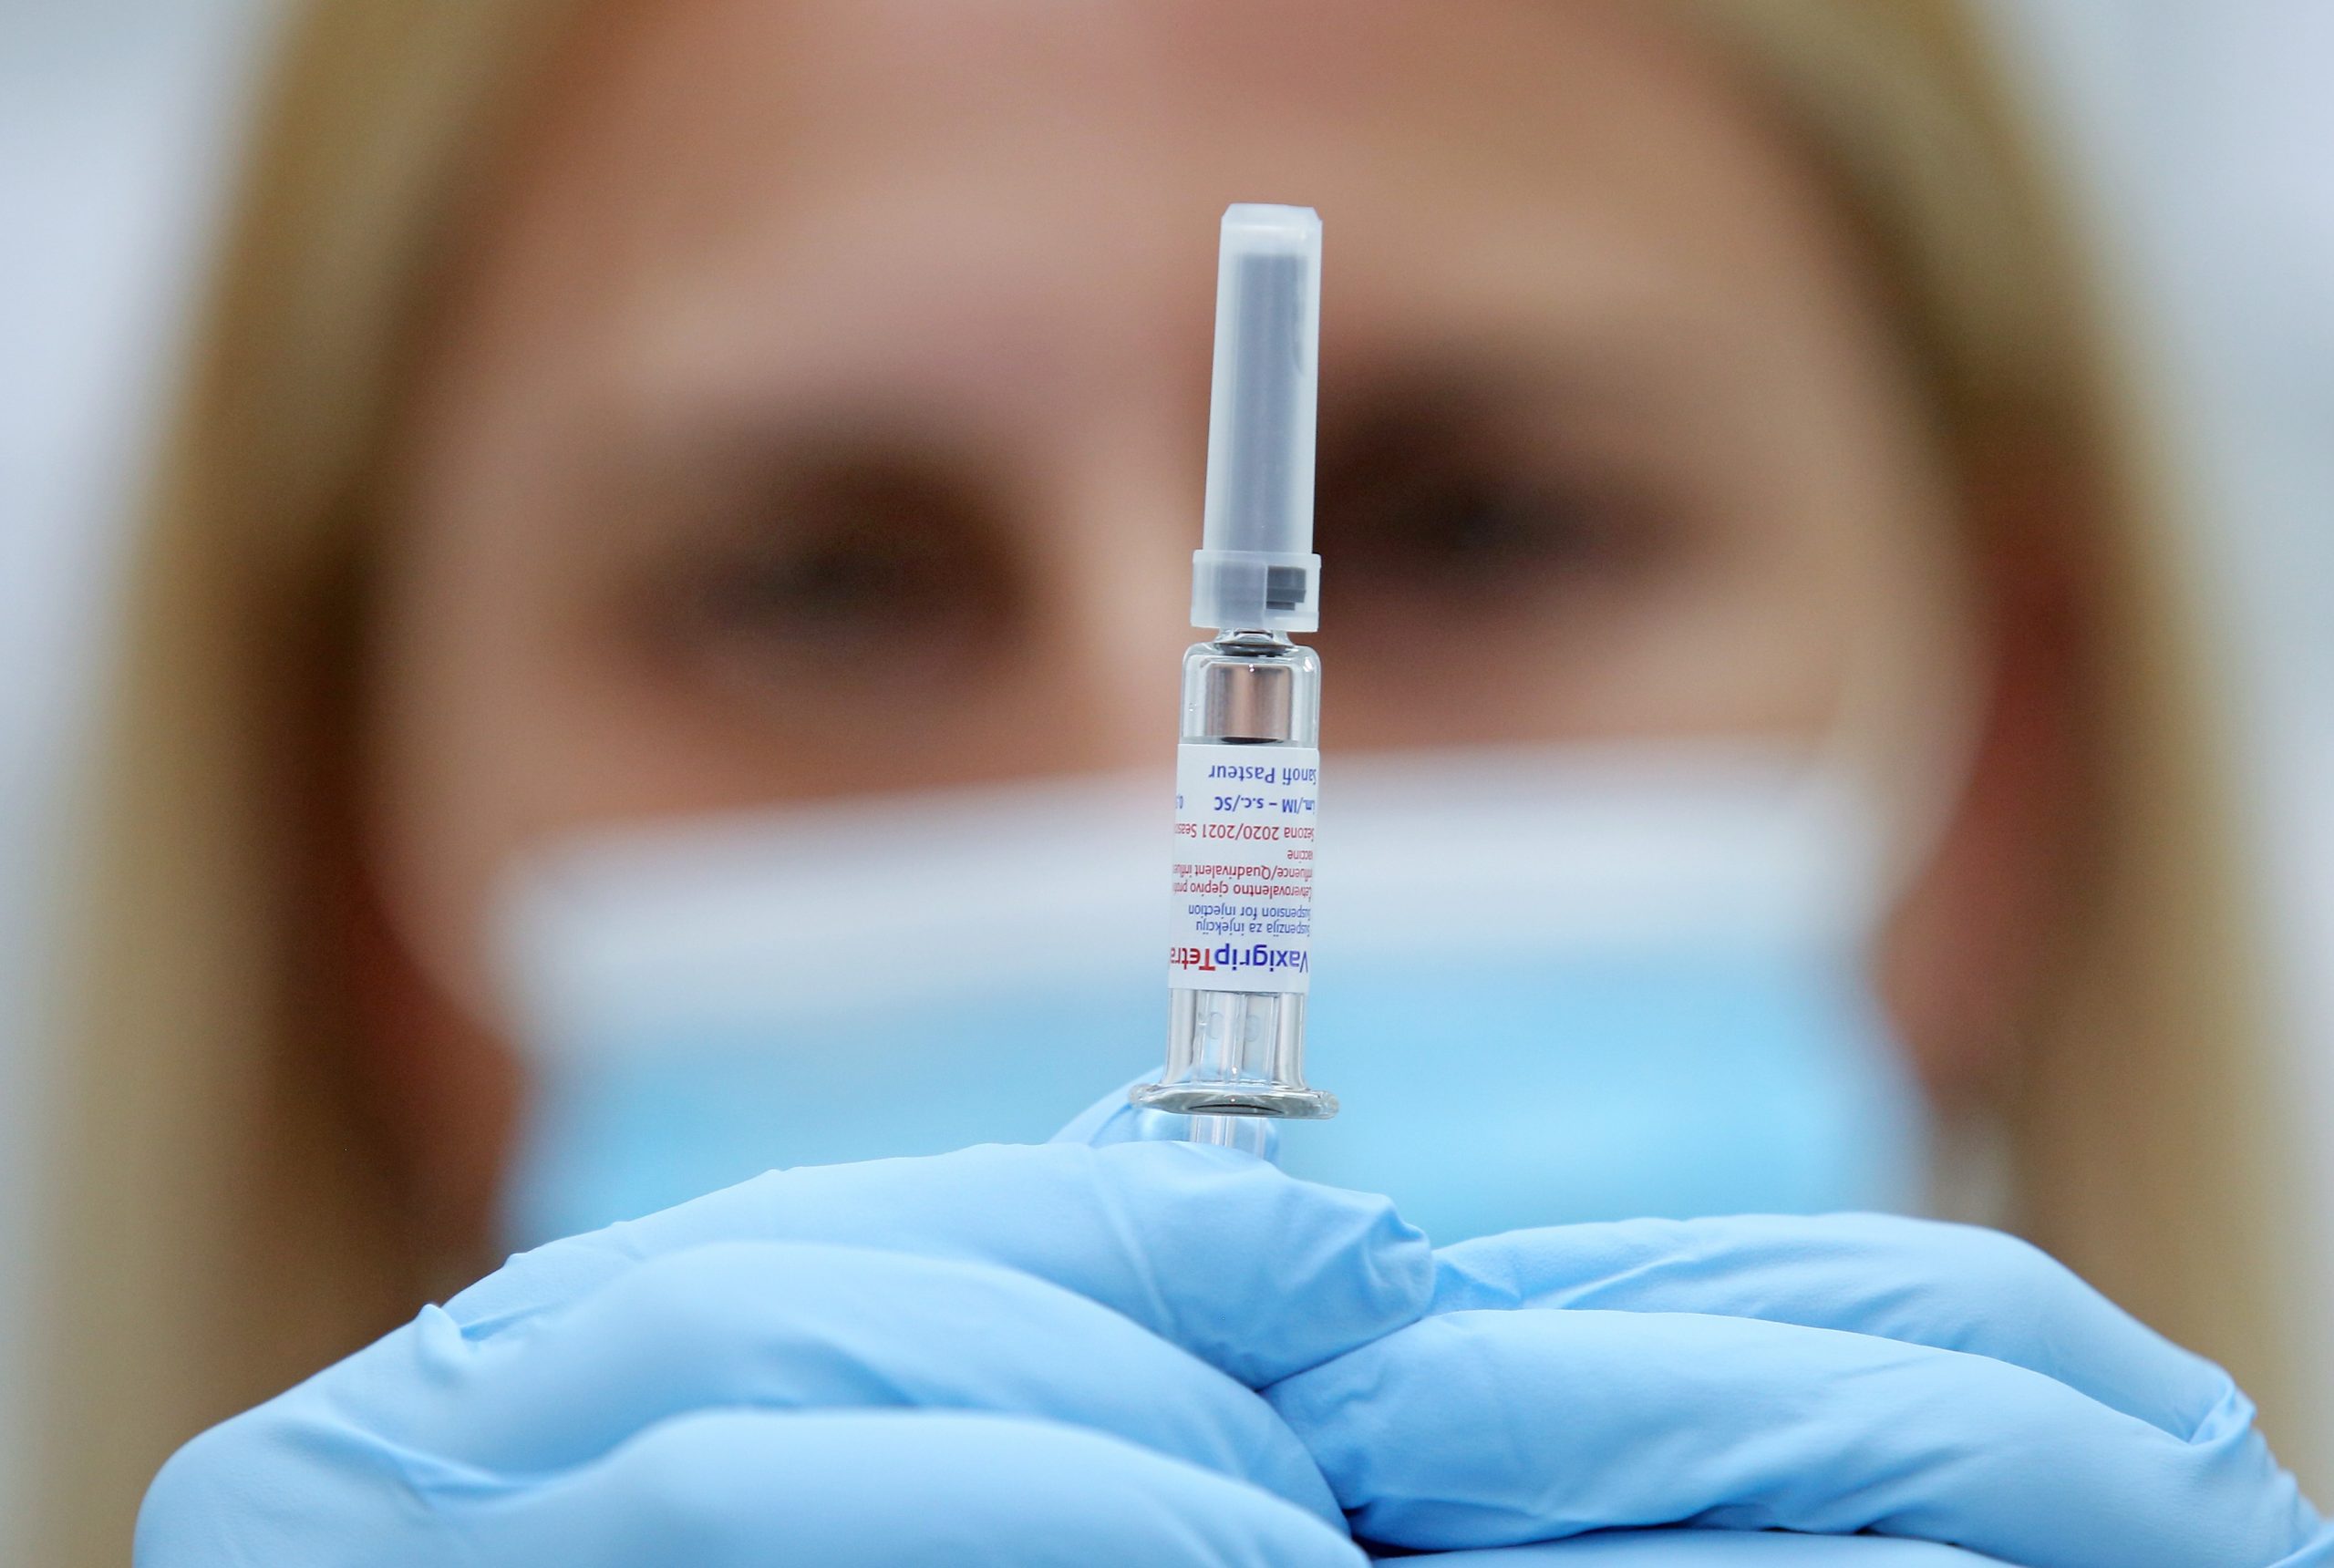 19.10.2020., Sibenik - U cijeloj Hrvatskoj pocelo je cijepljenje protiv gripe. Ove je godine nabavljeno cetverovalentno cjepivo VaxigripTetra koje sadrzi cetiri podtipa virusa i to virusa A (H1N1 i H3N2) i dva podtipa virusa B.
Photo: Dusko Jaramaz/PIXSELL